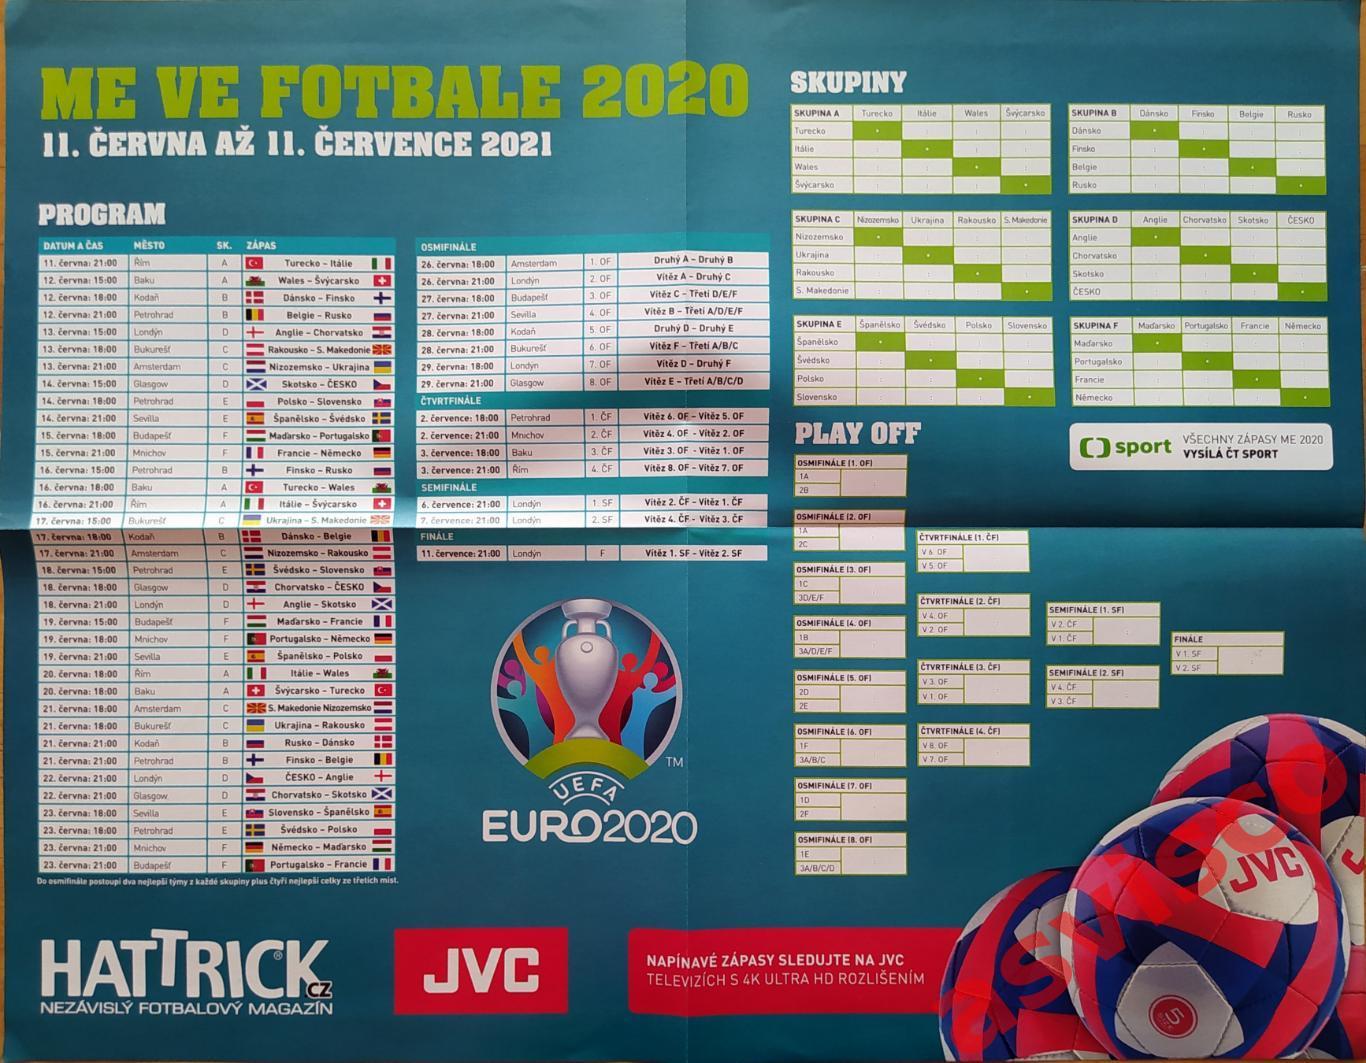 Чемпионат Европы по футболу ЕВРО-2020/21. Представление команд. 7